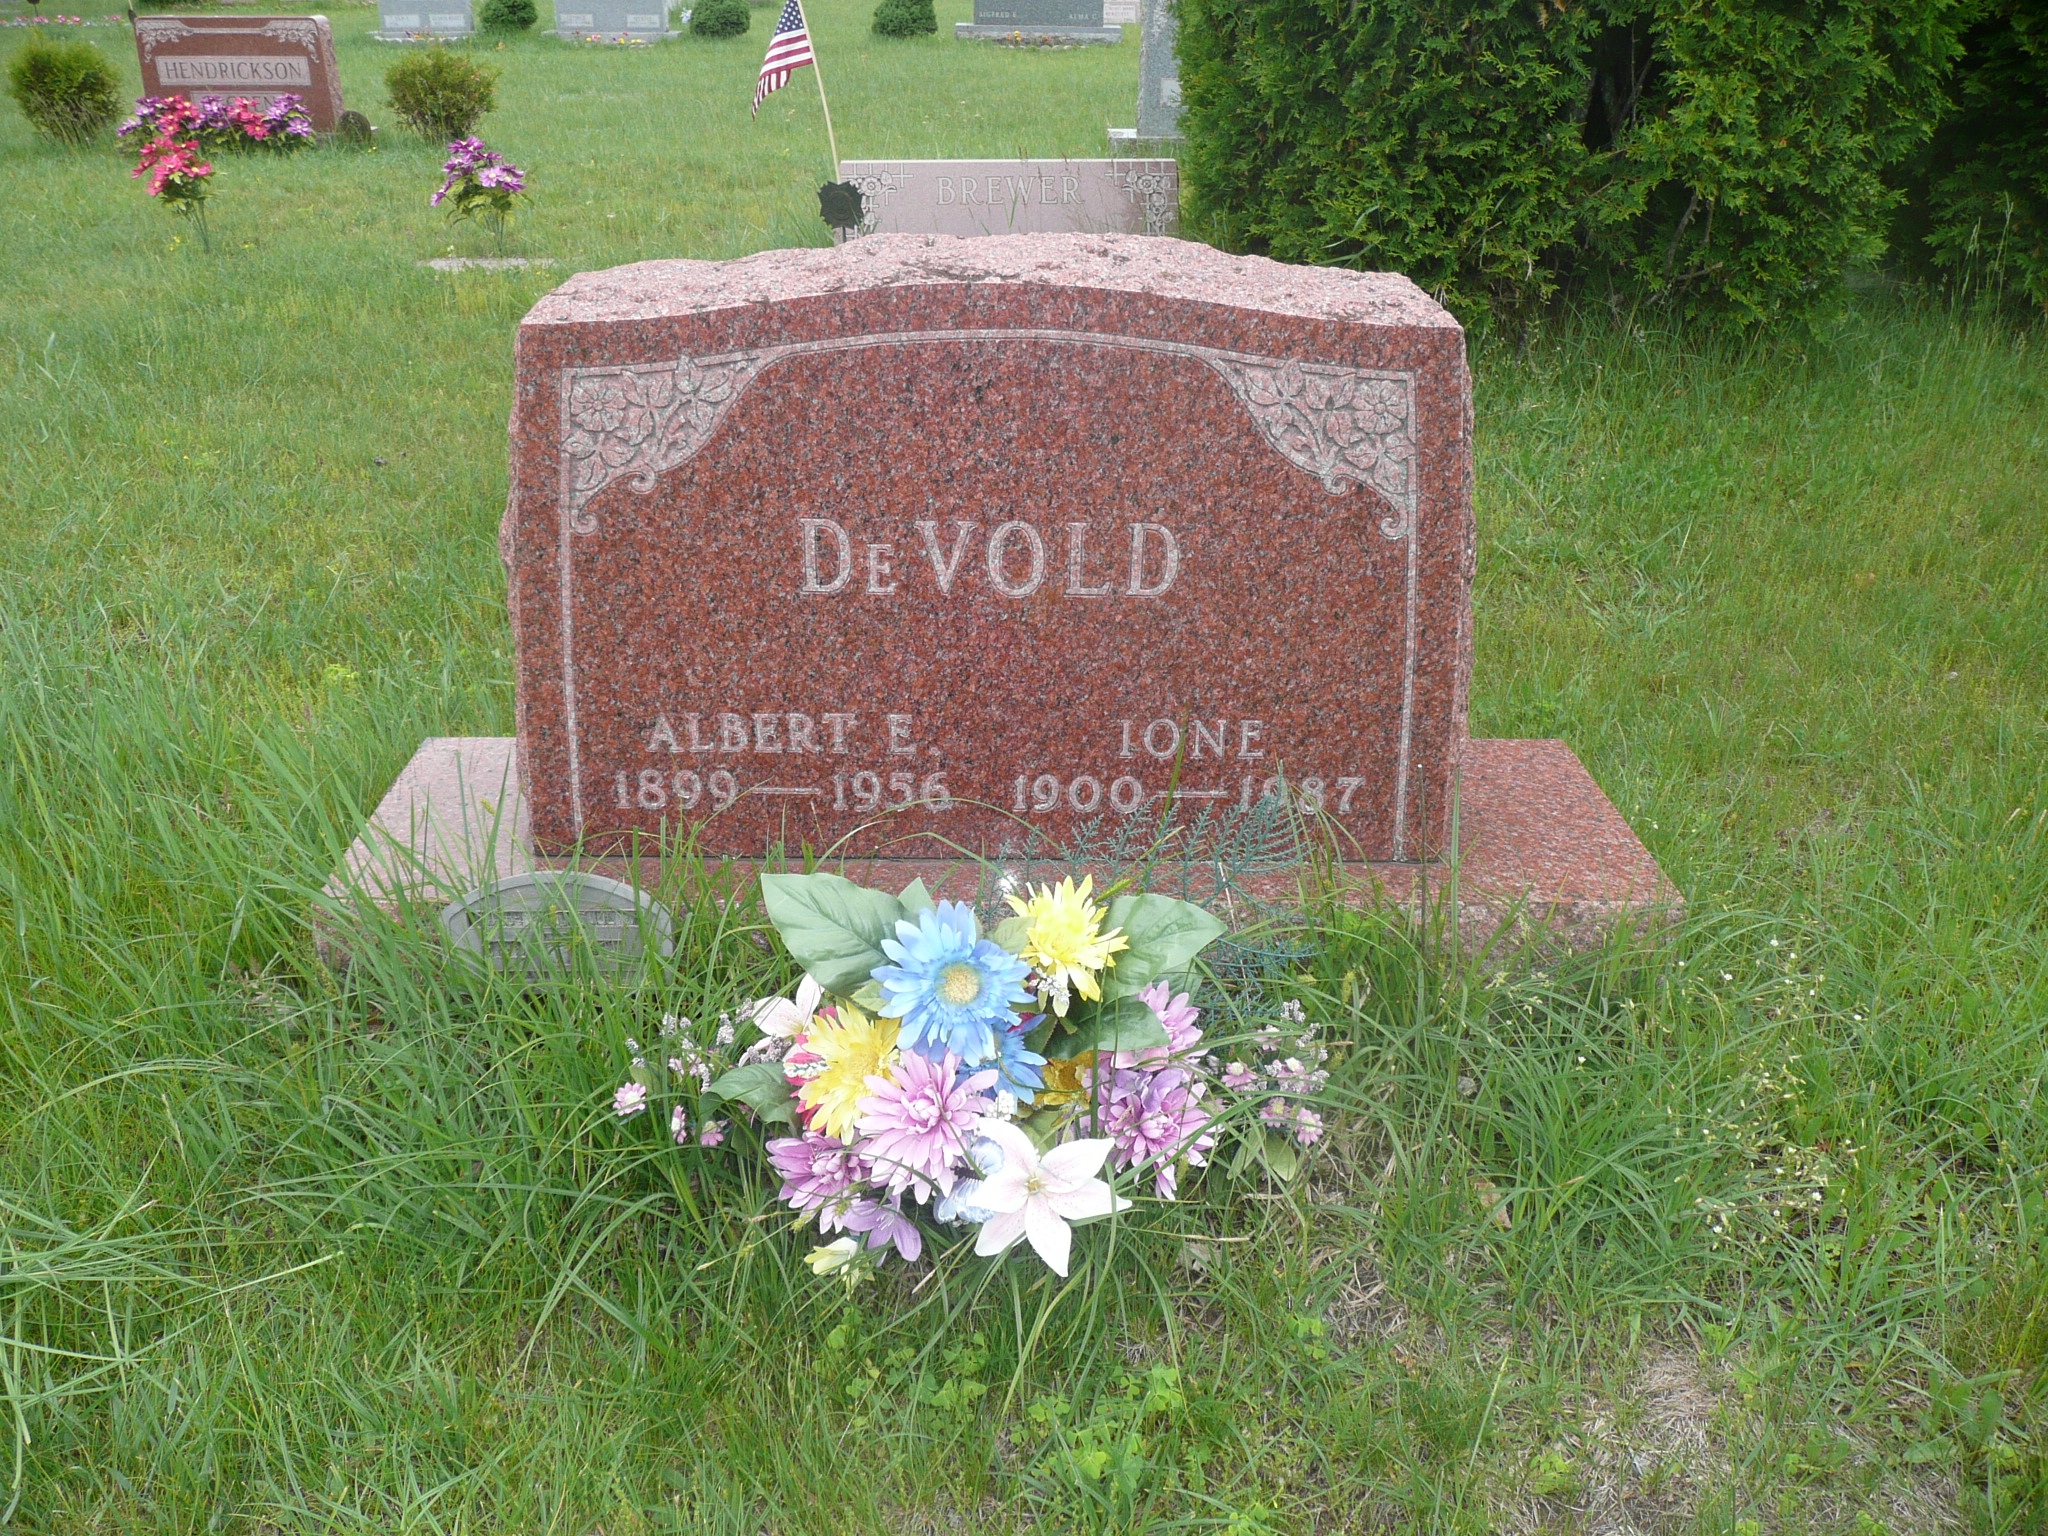 Albert & Ione Devold gravesite